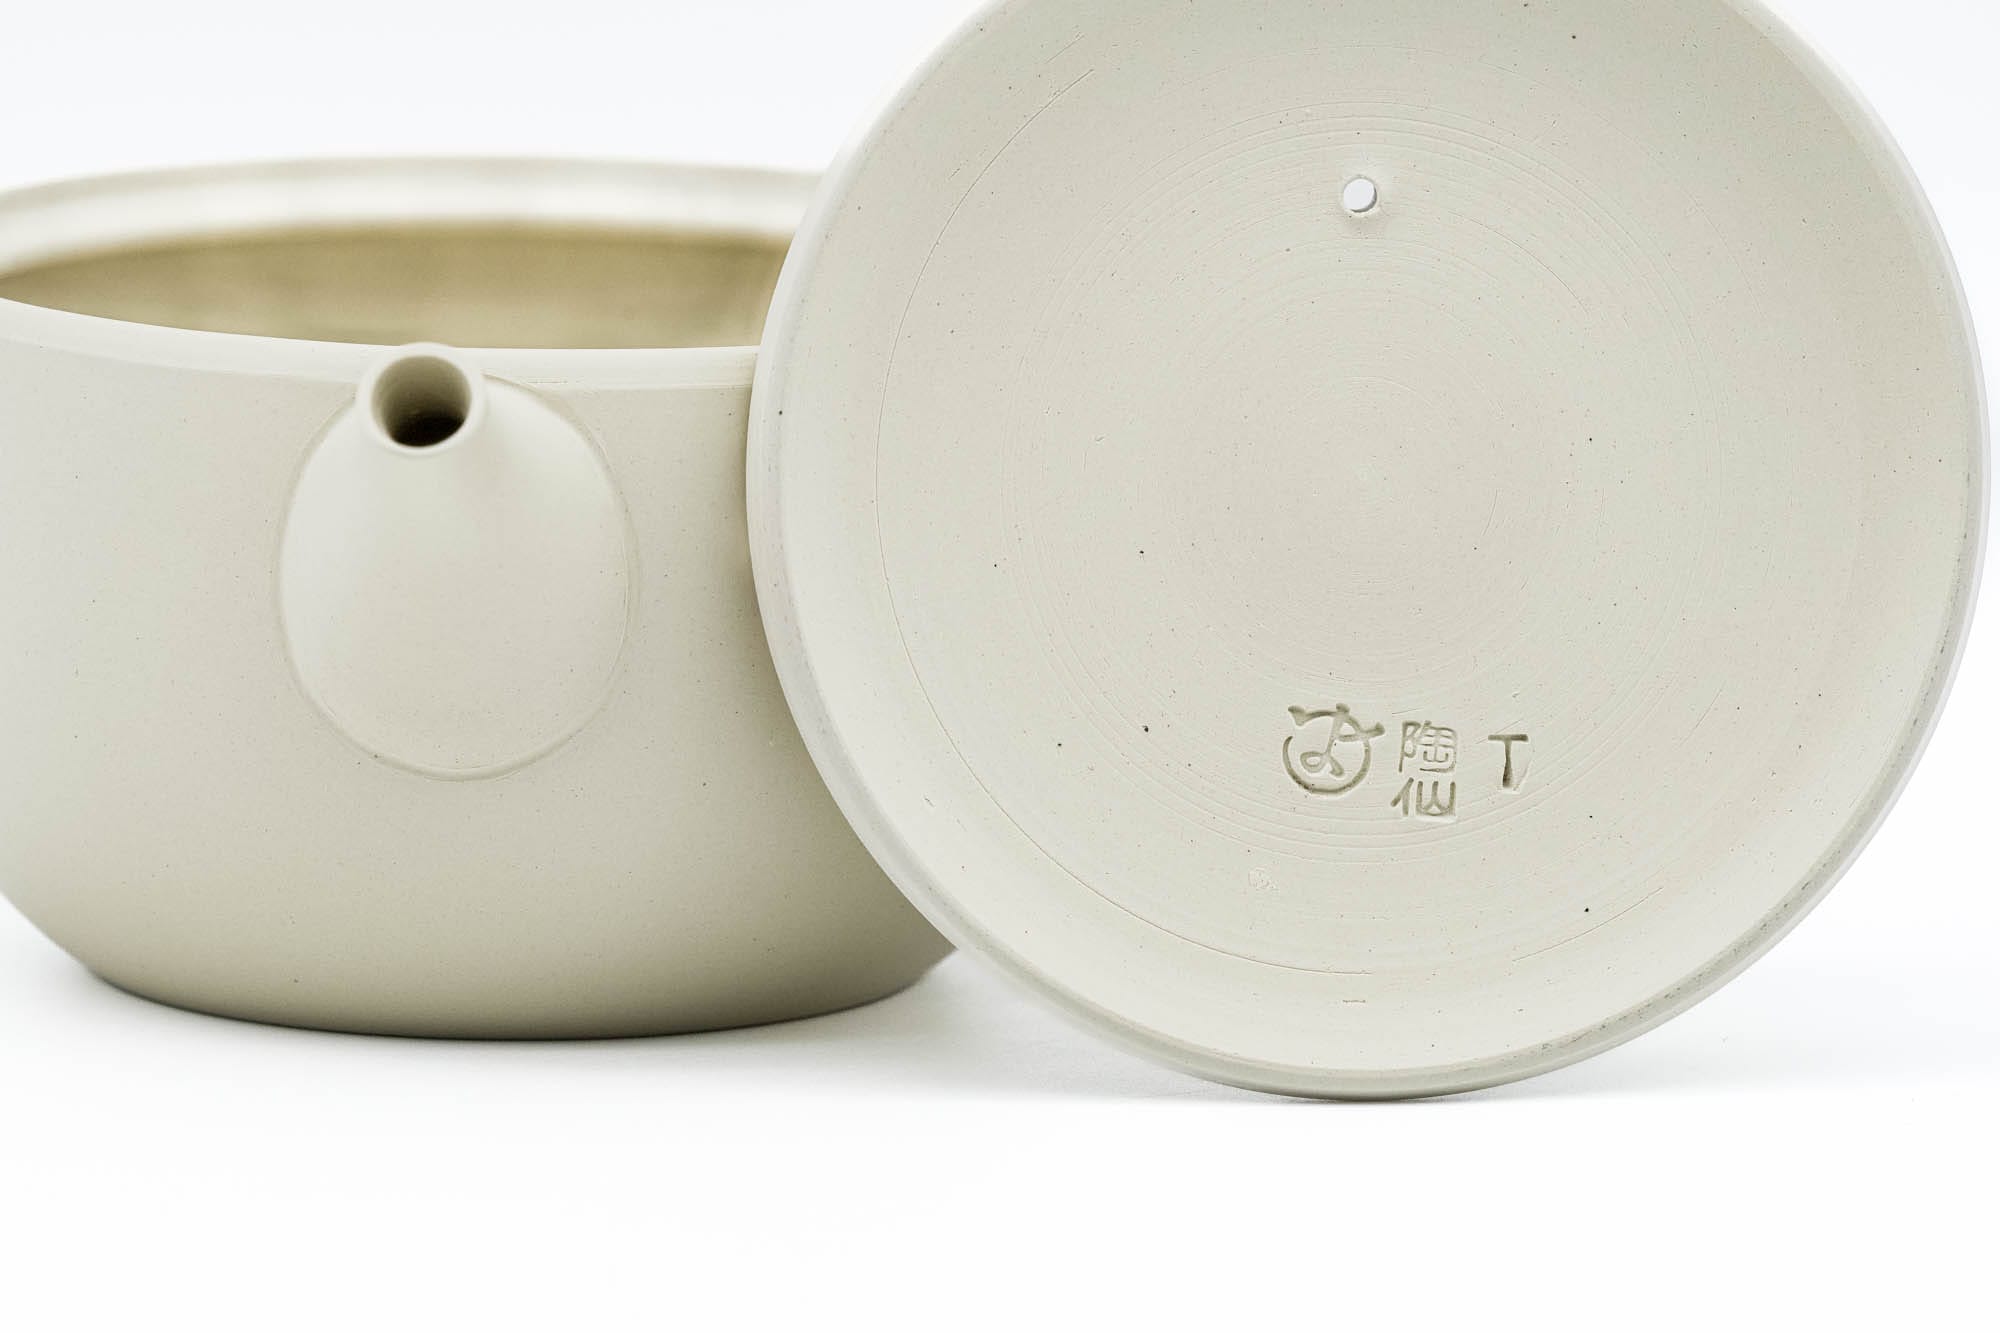 Japanese Tea Set - 陶仙窯 Tosen Kiln - White Tokoname Teapot with Pair of Matte Blue Teacups